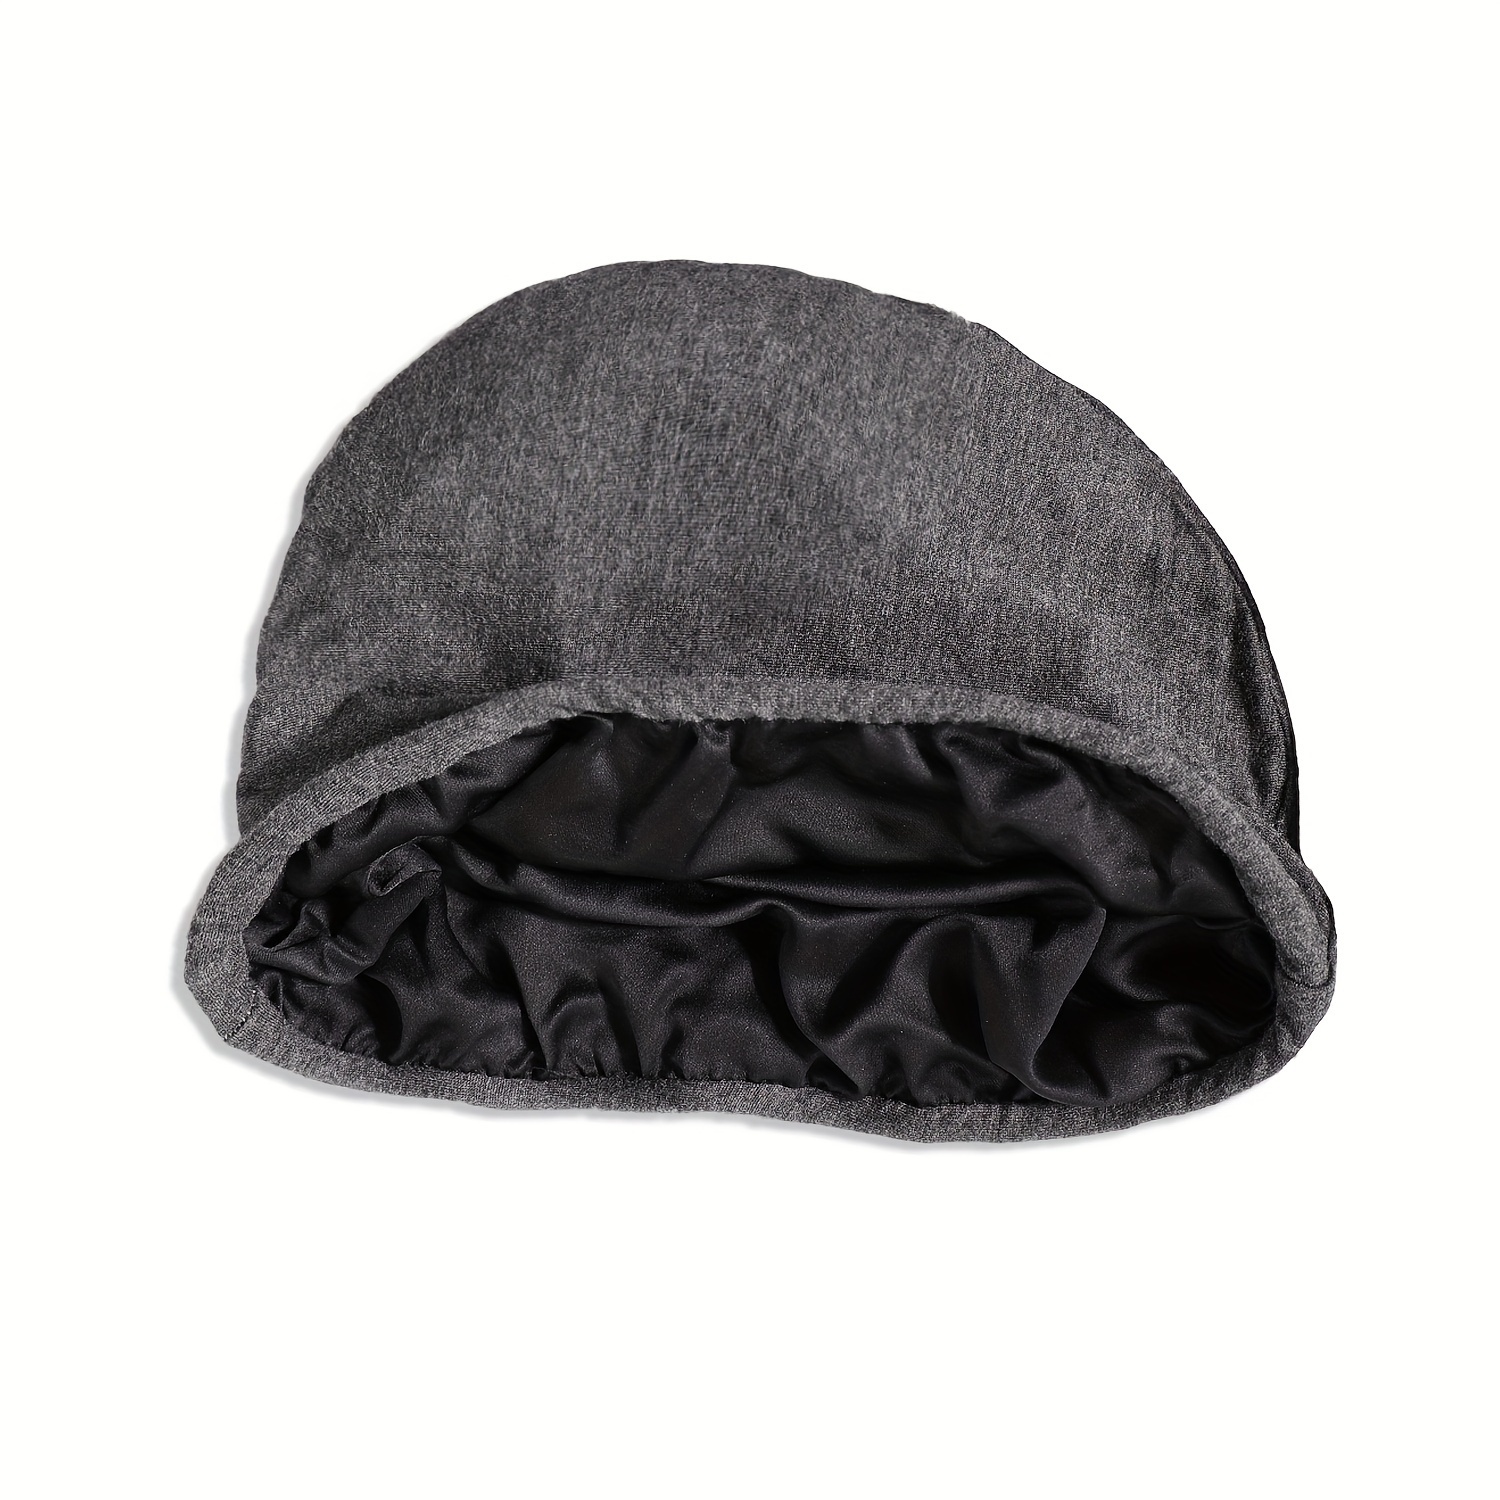 قطعة واحدة من قبعة عمامة كاجوال مزدوجة الطبقات للرجال قابلة للتنفس ومتعددة الاستخدامات، قبعة صغيرة للرجال